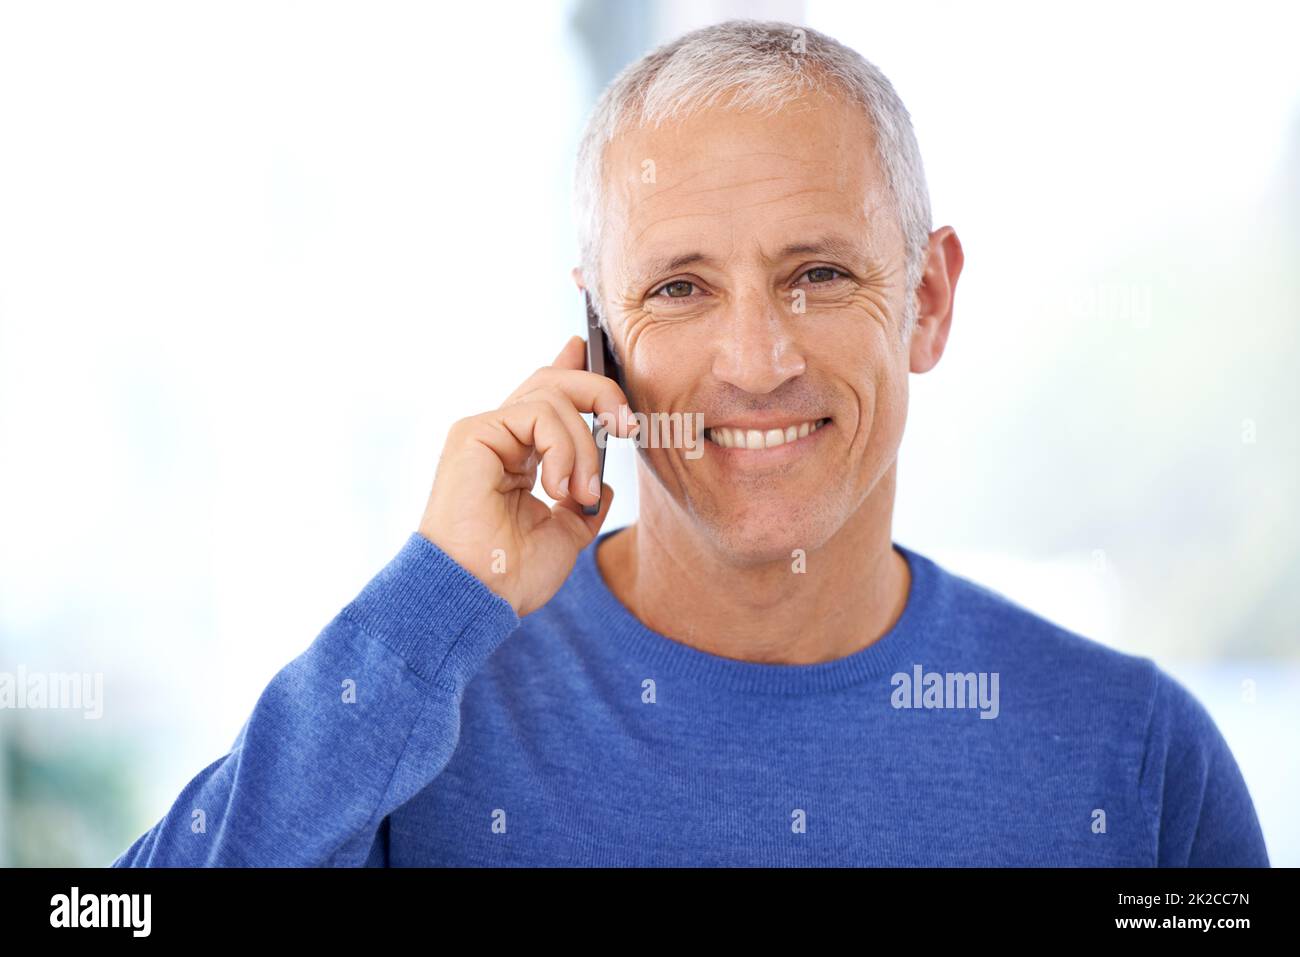 Mit Freunden und Familie in Kontakt bleiben. Ein reifer Mann, der ein angenehmes Telefongespräch führt. Stockfoto